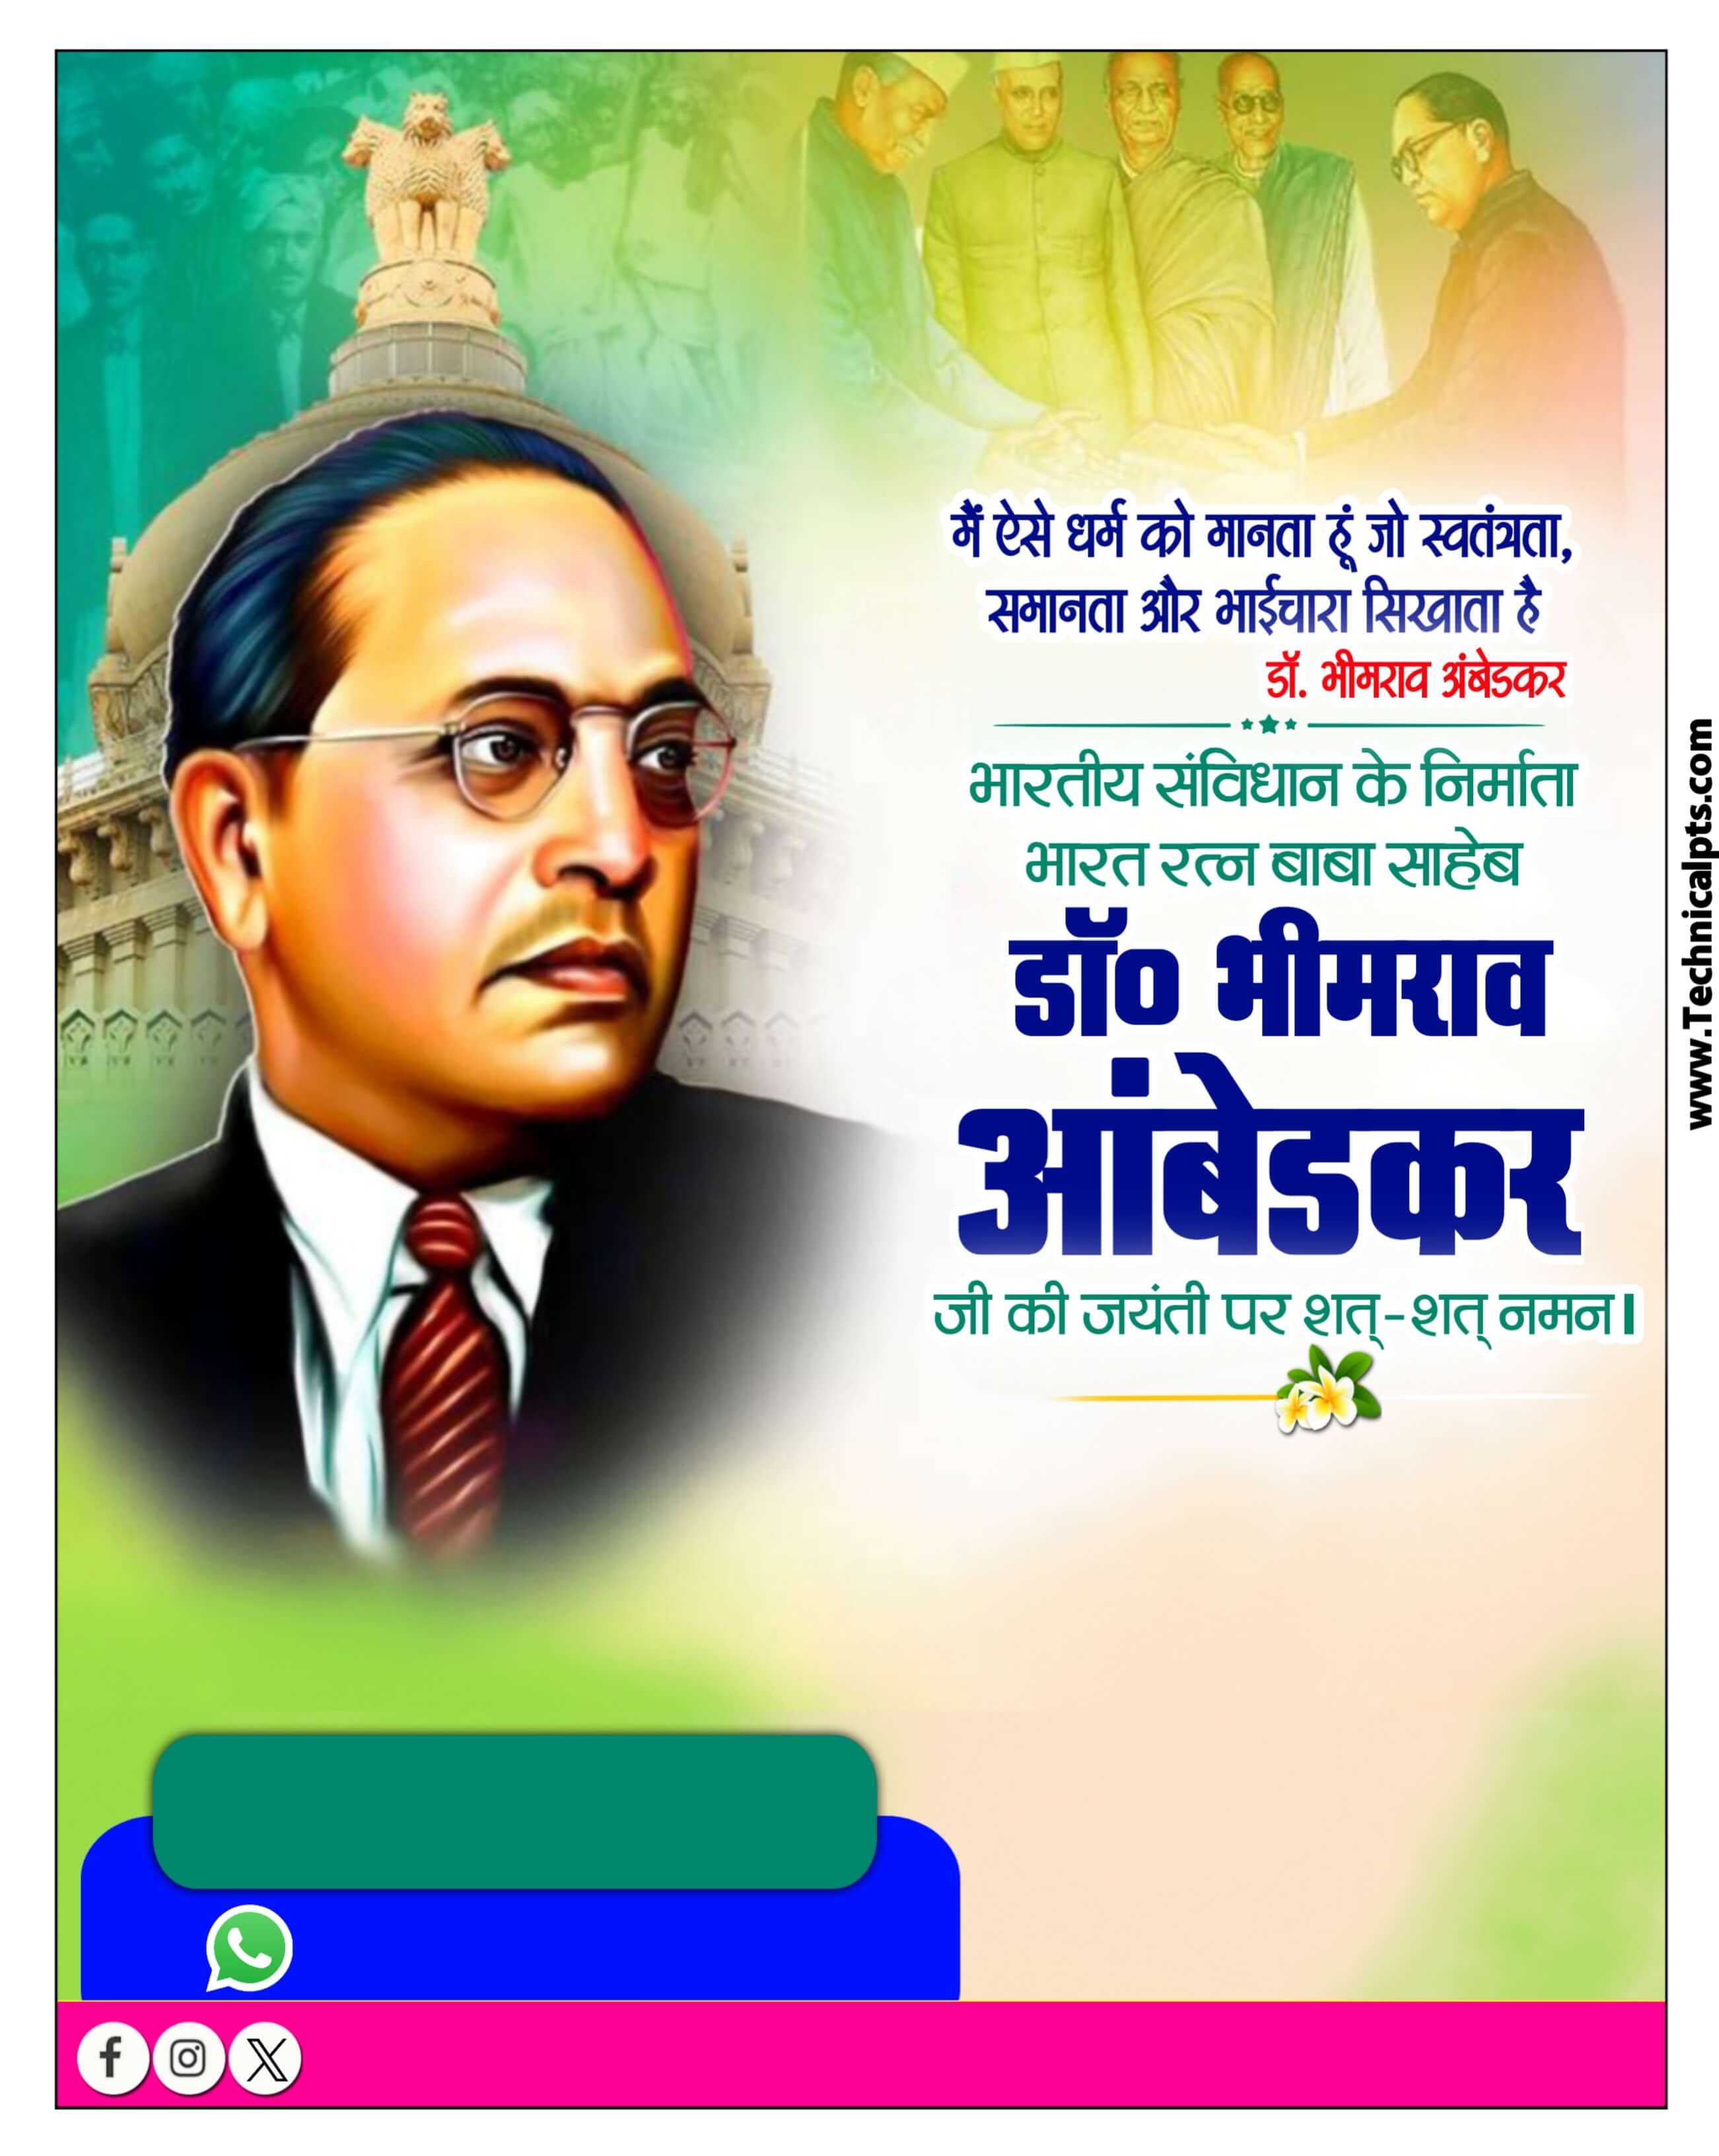 Ambedkar jayanti poster kaise banaen| ambedkar jayanti poster editing plp file| bheemrav Ambedkar Jayanti poster PlP file download